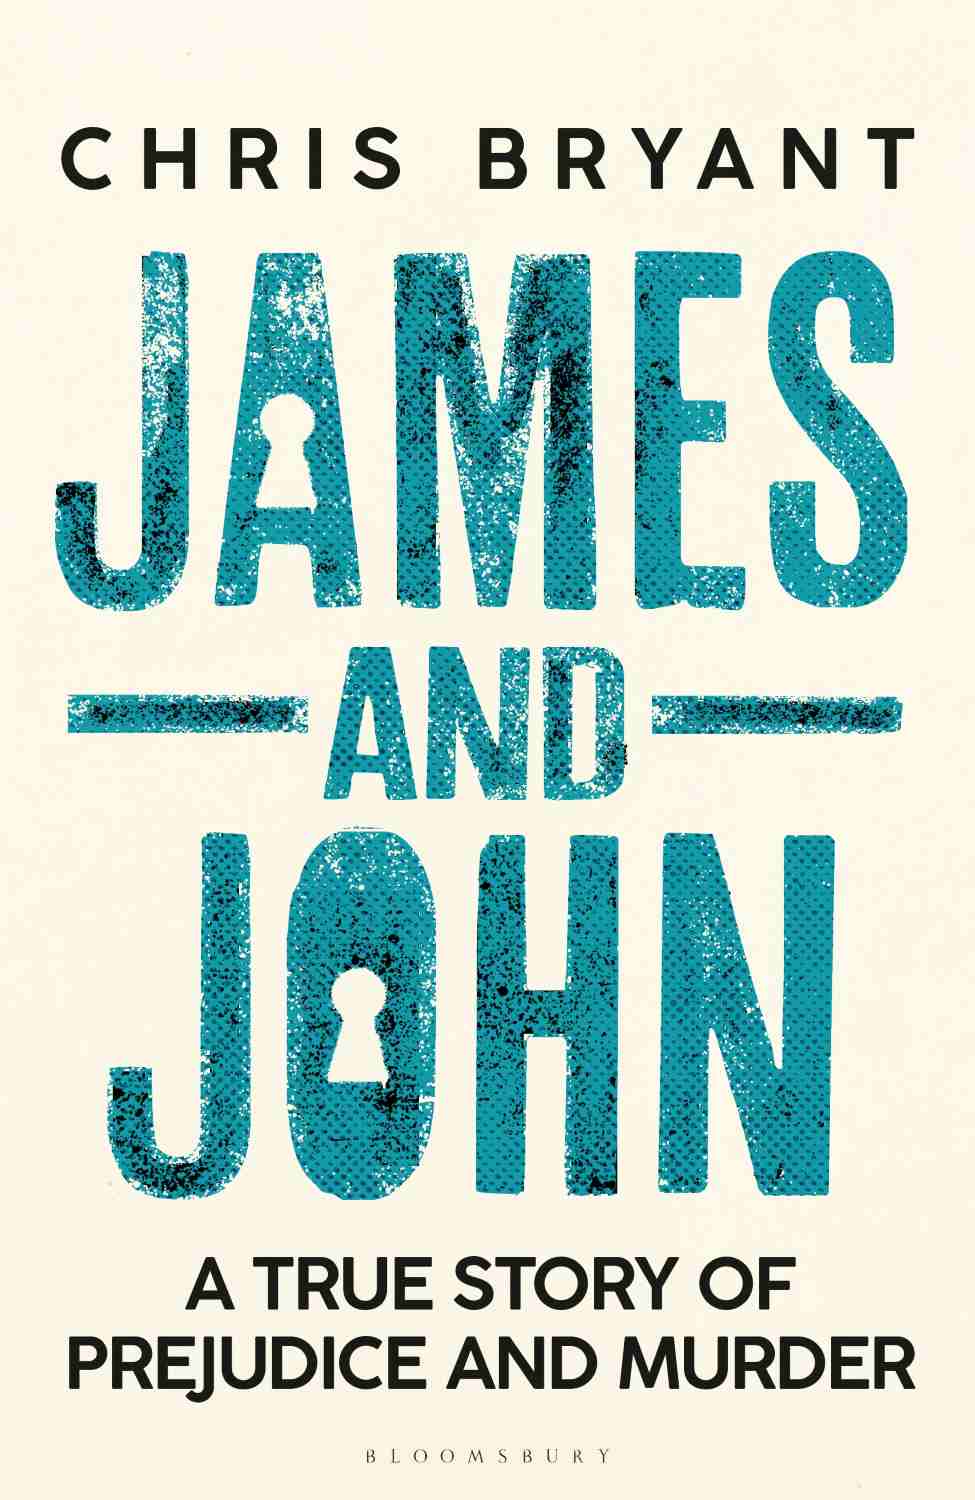 James & John